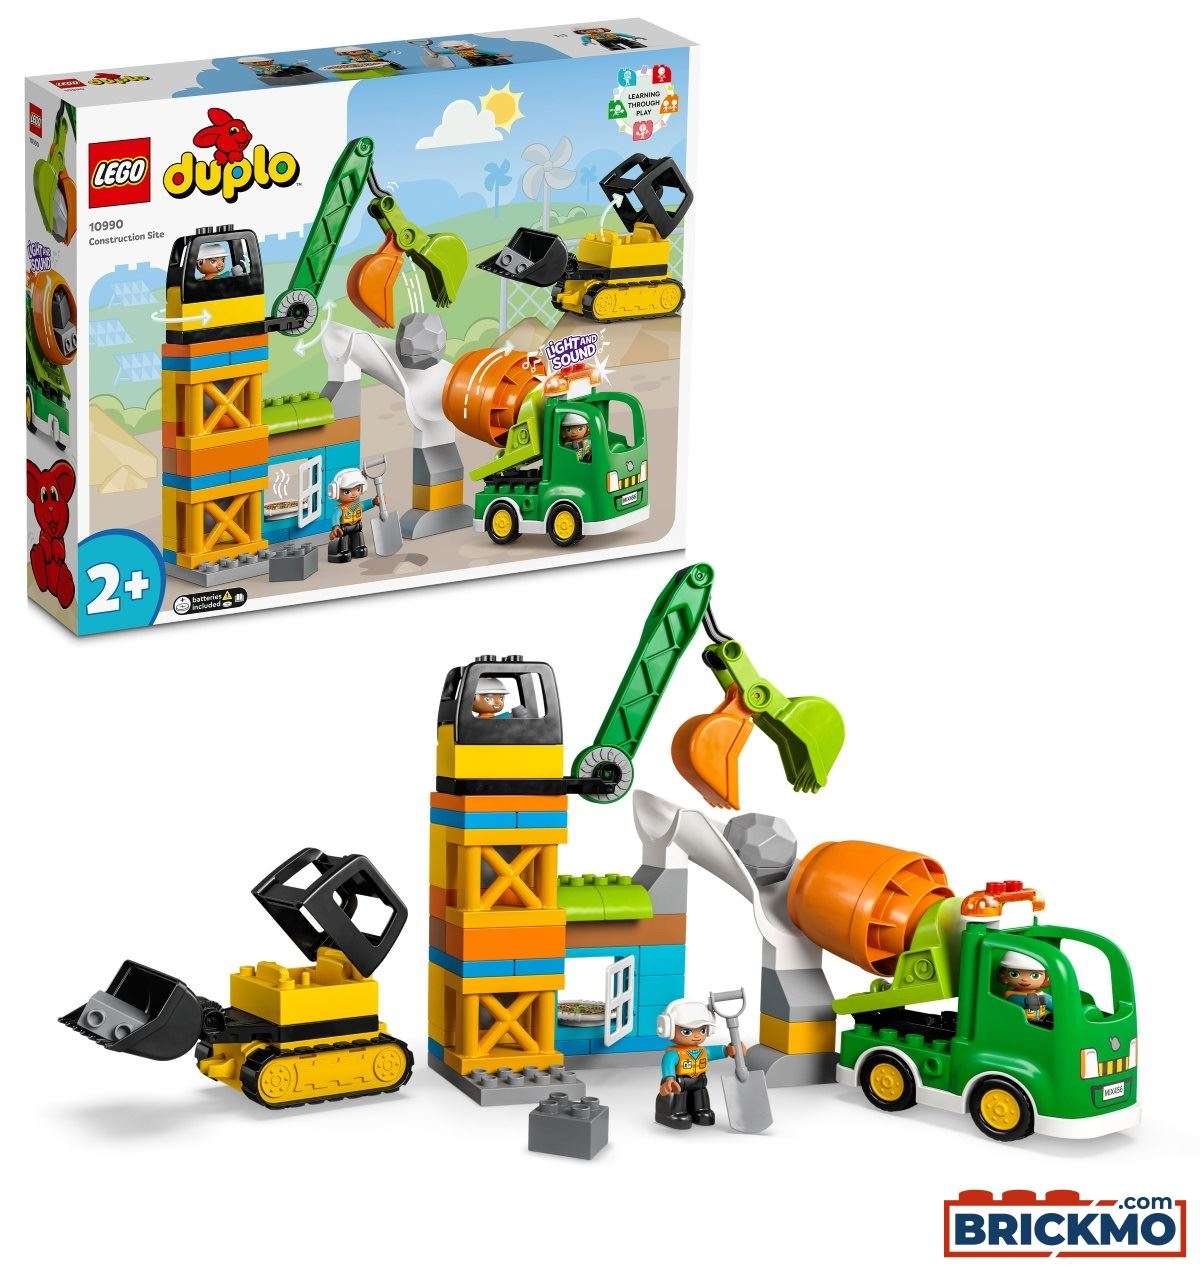 LEGO Duplo 10990 Baustelle mit Baufahrzeugen 10990